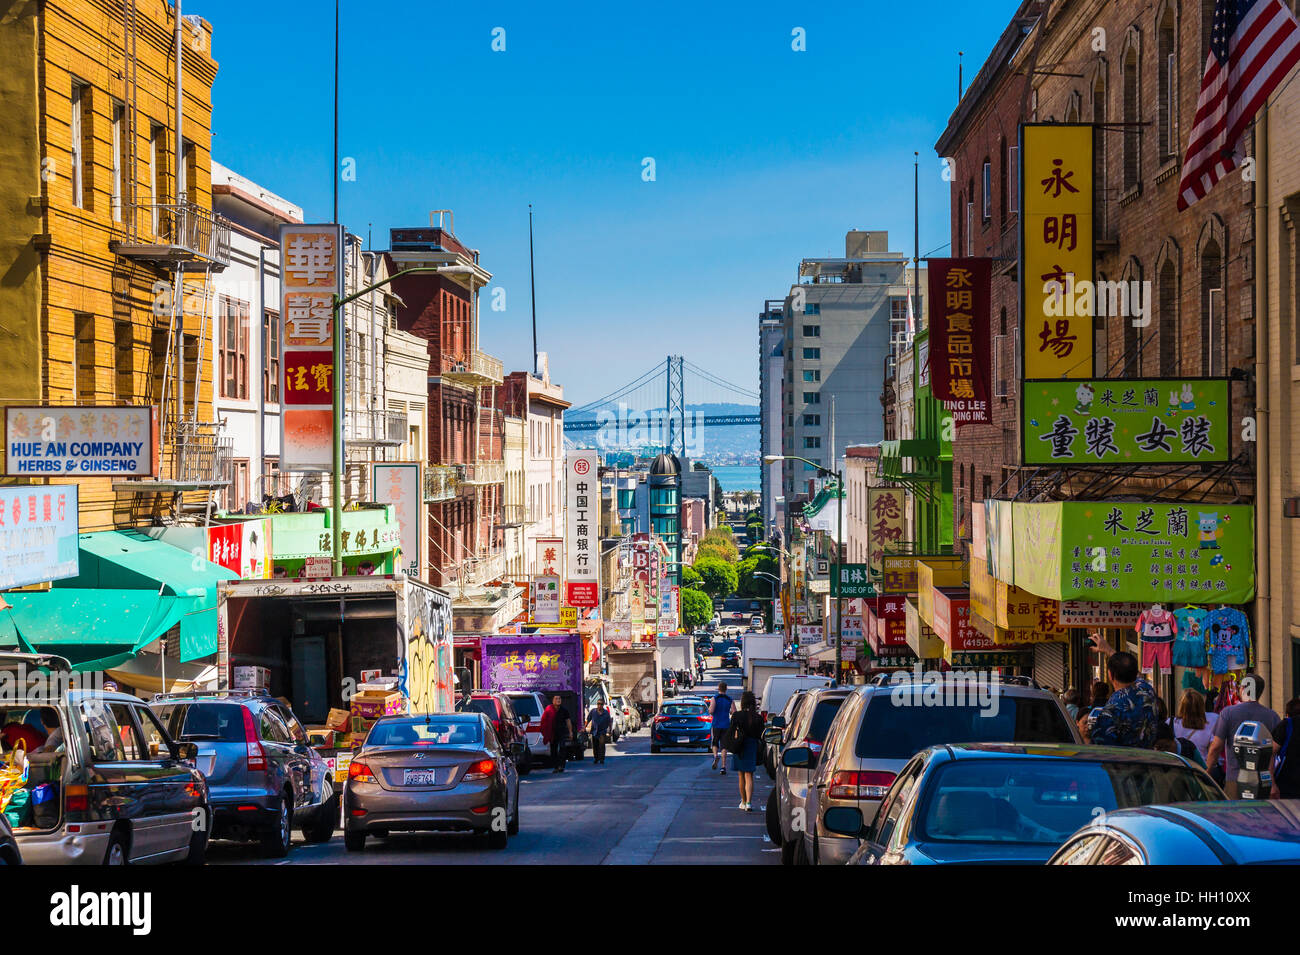 Die Innenstadt von Stadtleben in einer belebten Straße von Chinatown San Francisco. Mit vielen Menschen, Geschäfte und Autos mit Oakland Bay Bridge anzeigen Stockfoto